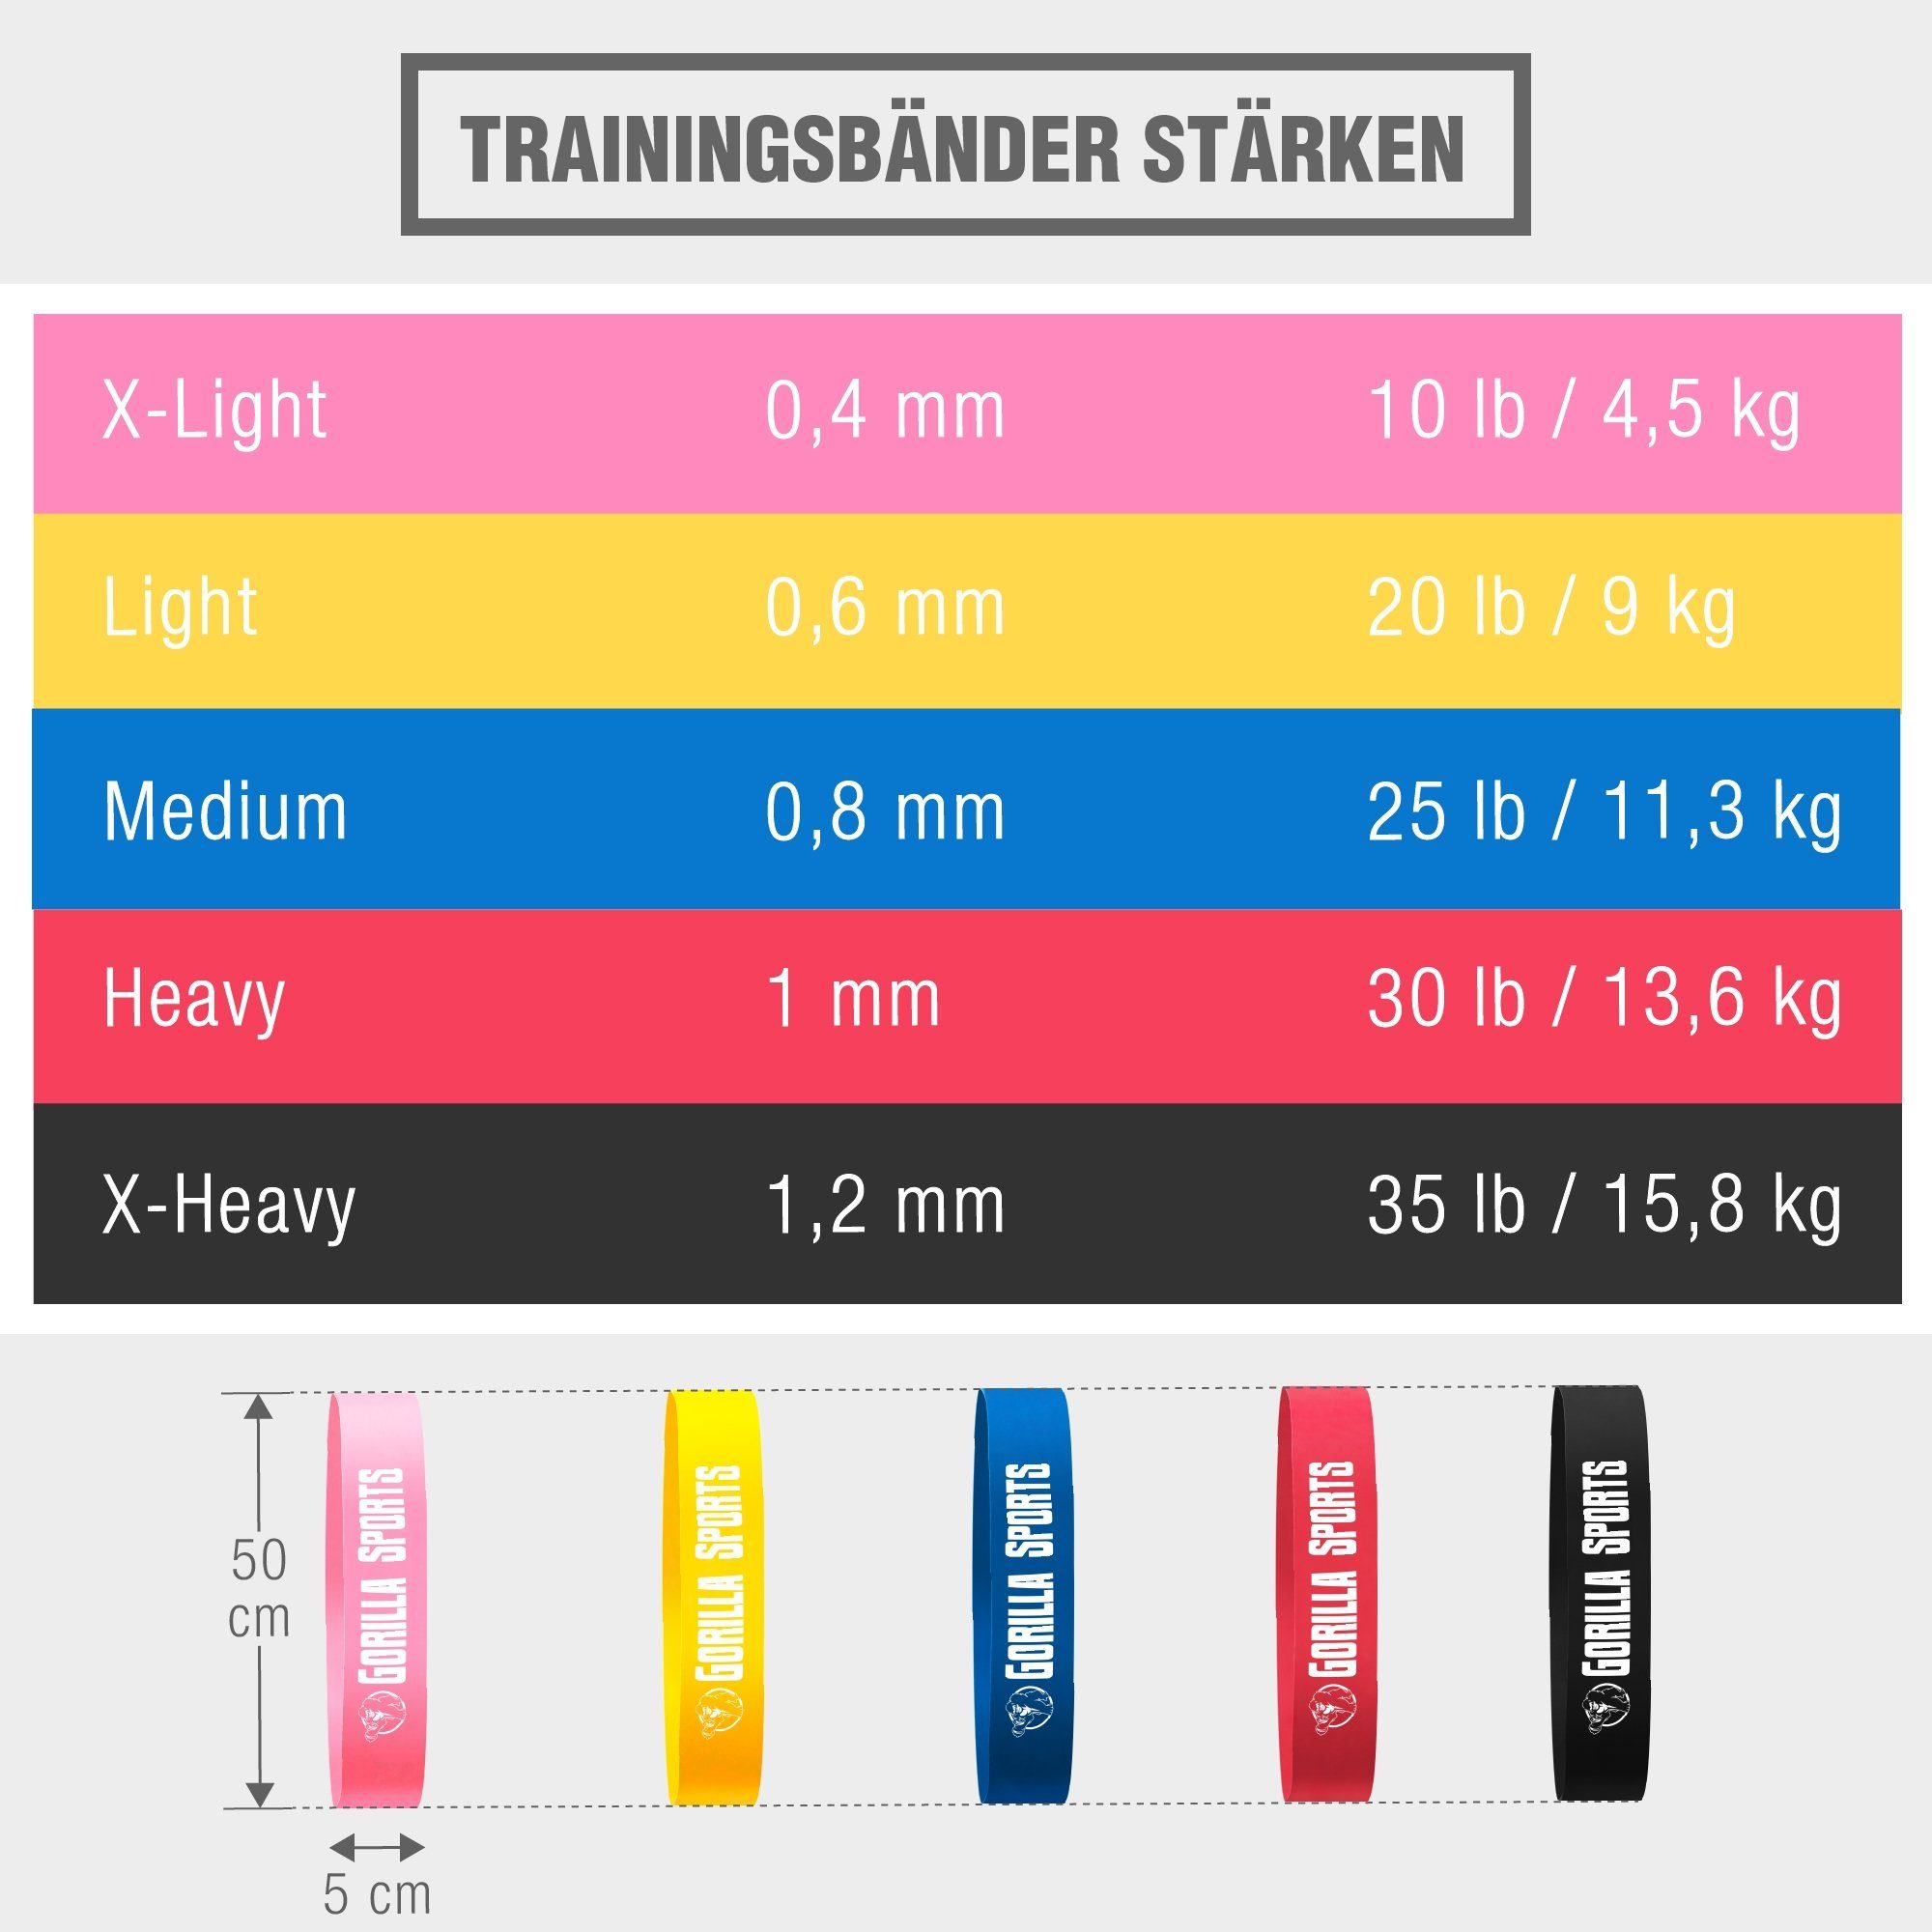 GORILLA SPORTS Trainingsband 5 rutschfest, Stärke, 0,8 Verschiedene Farbwahl Widerstandsbänder mm Latex, 